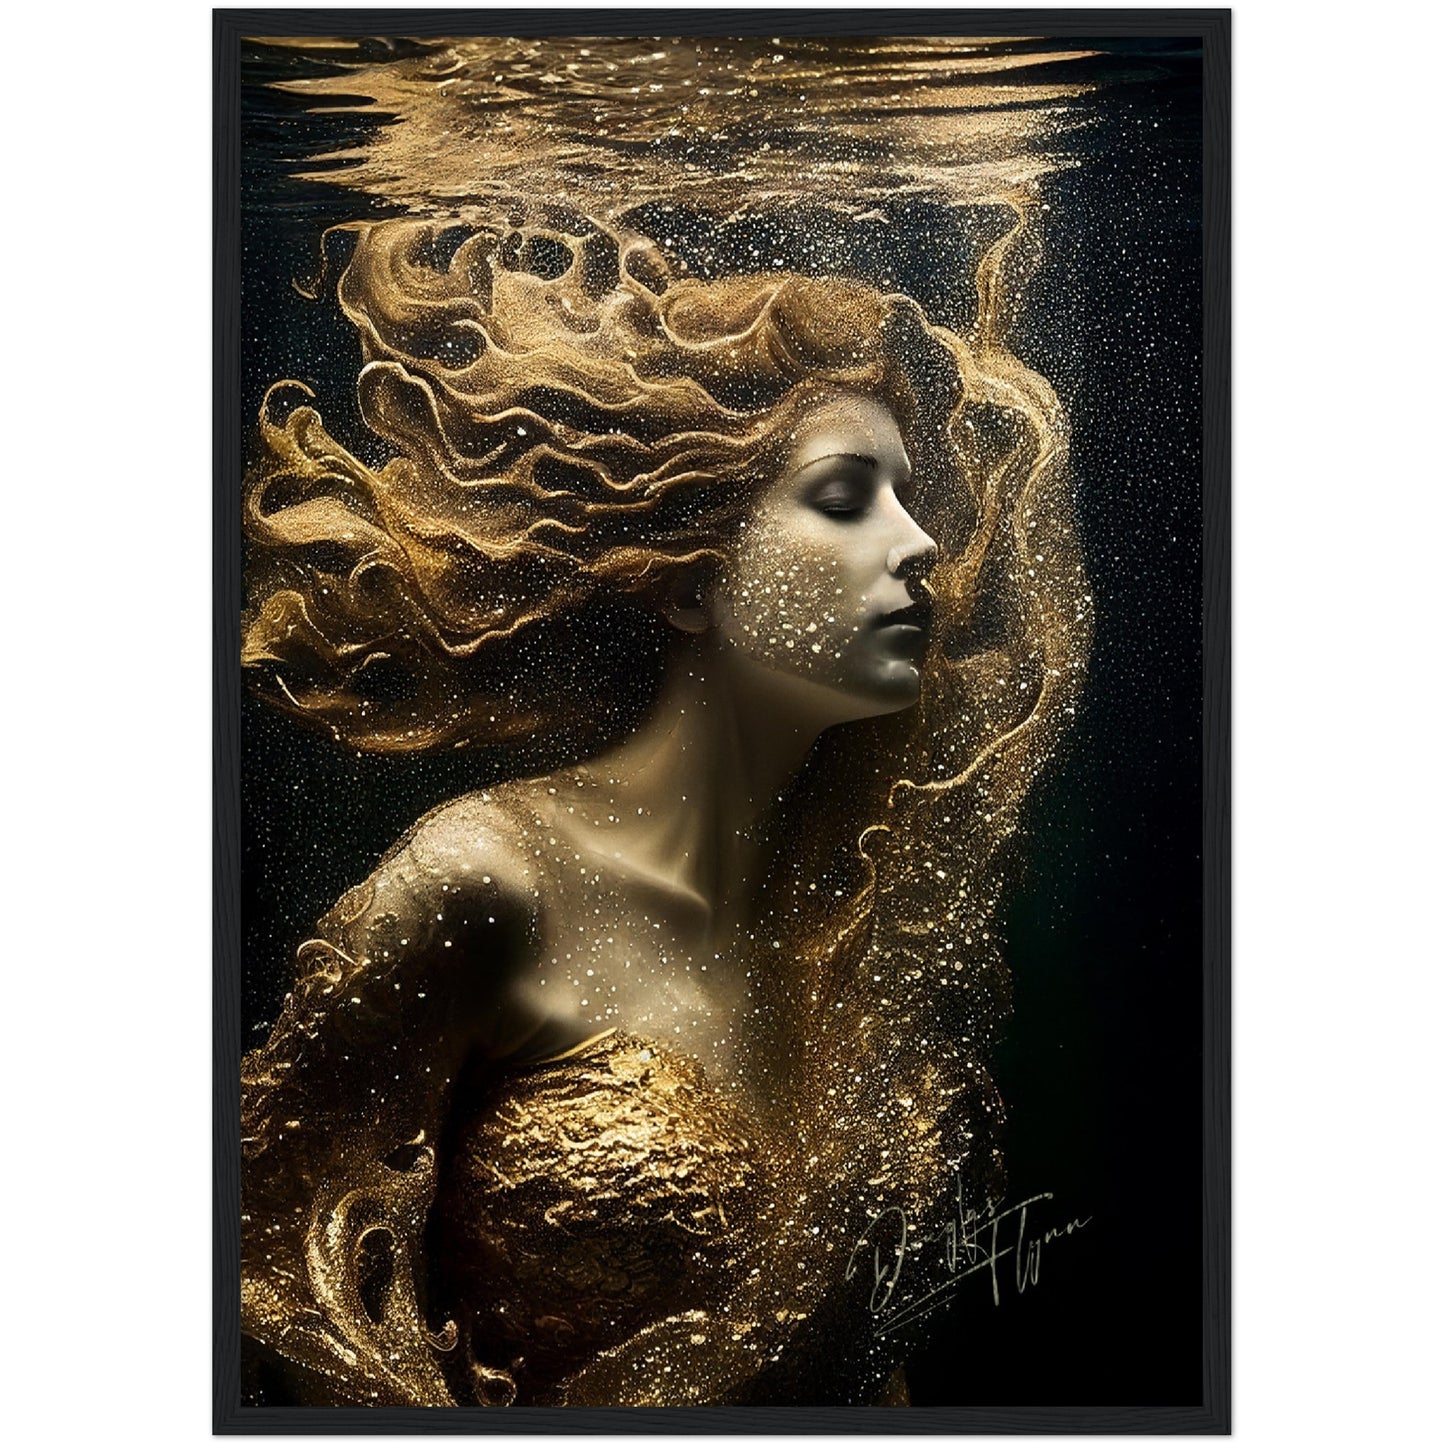 »Golden Seashell Elegance« retro poster